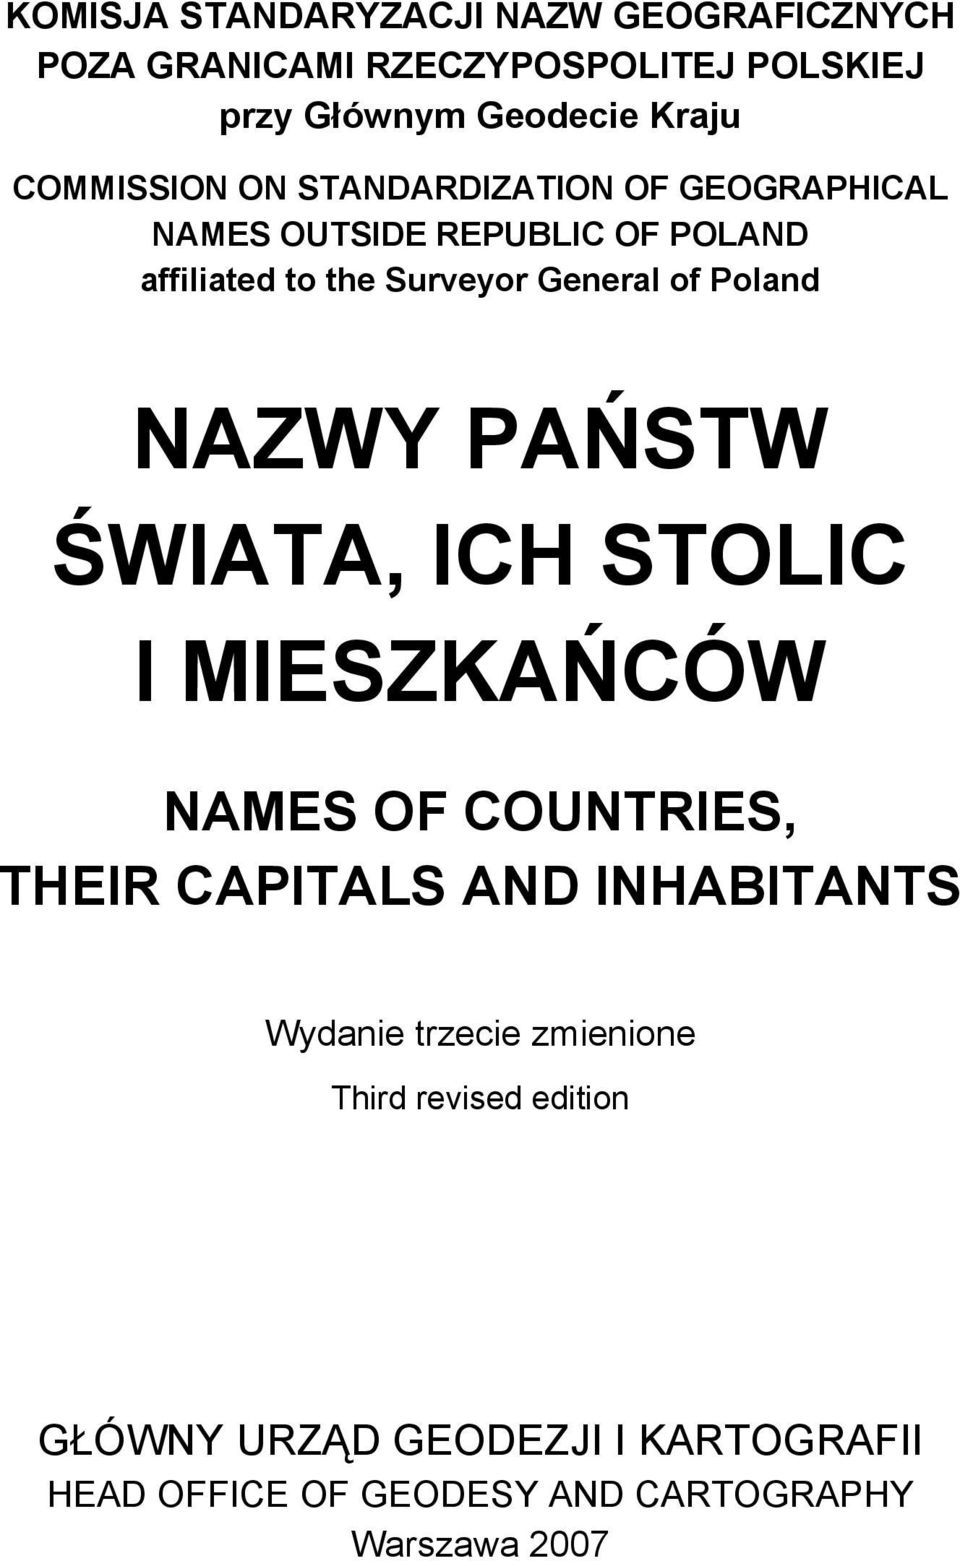 Poland NAZWY PAŃSTW ŚWIATA, ICH STOLIC I MIESZKAŃCÓW NAMES OF COUNTRIES, THEIR CAPITALS AND INHABITANTS Wydanie